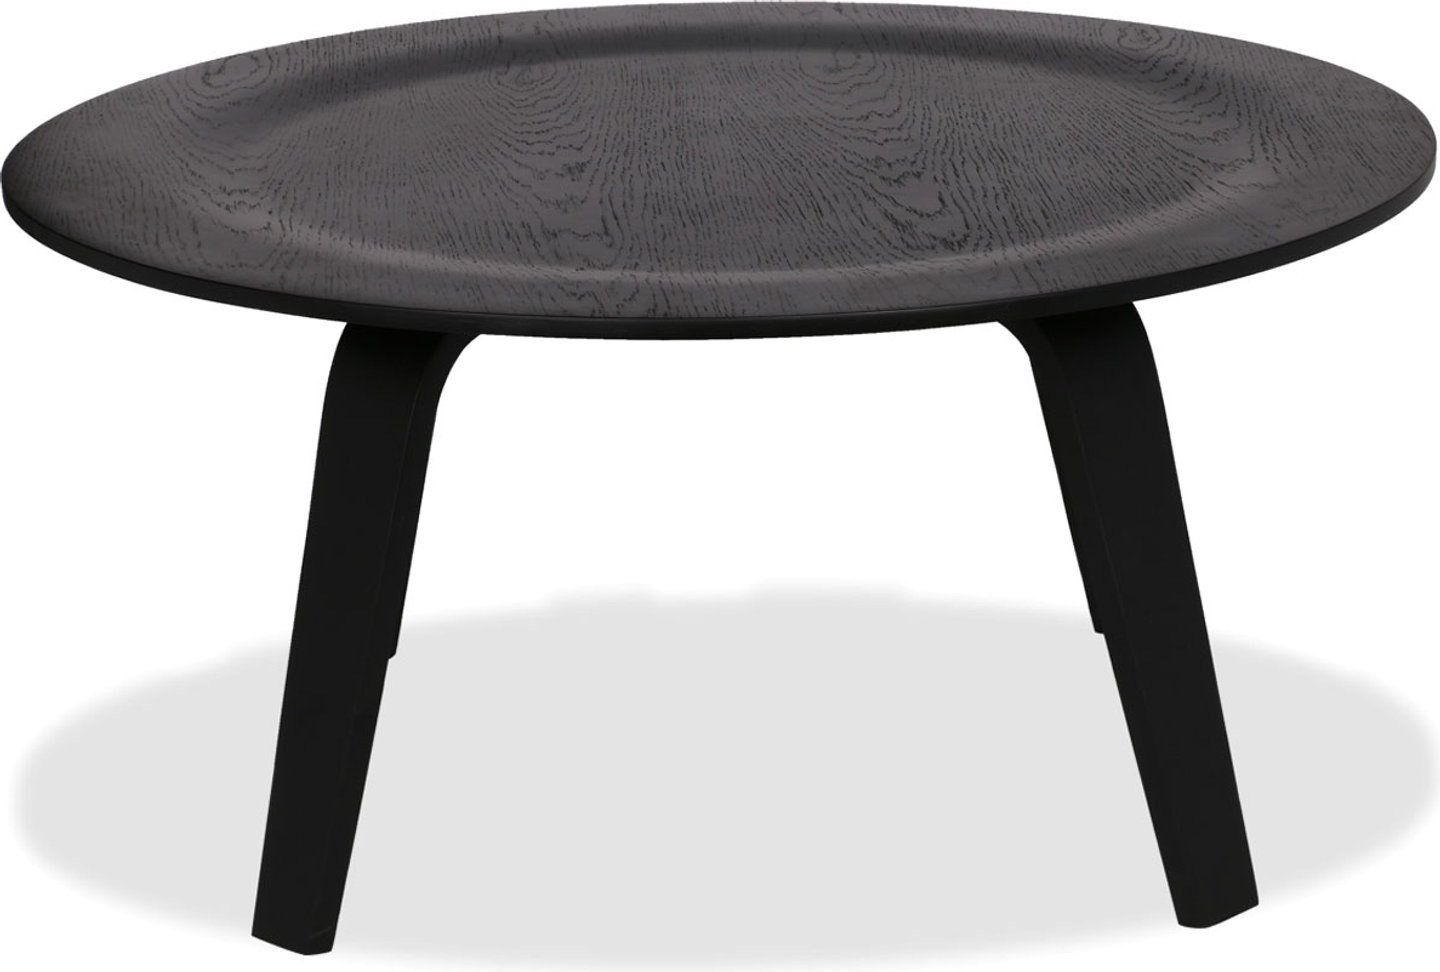 Tavolino in compensato stile Eames Black image.